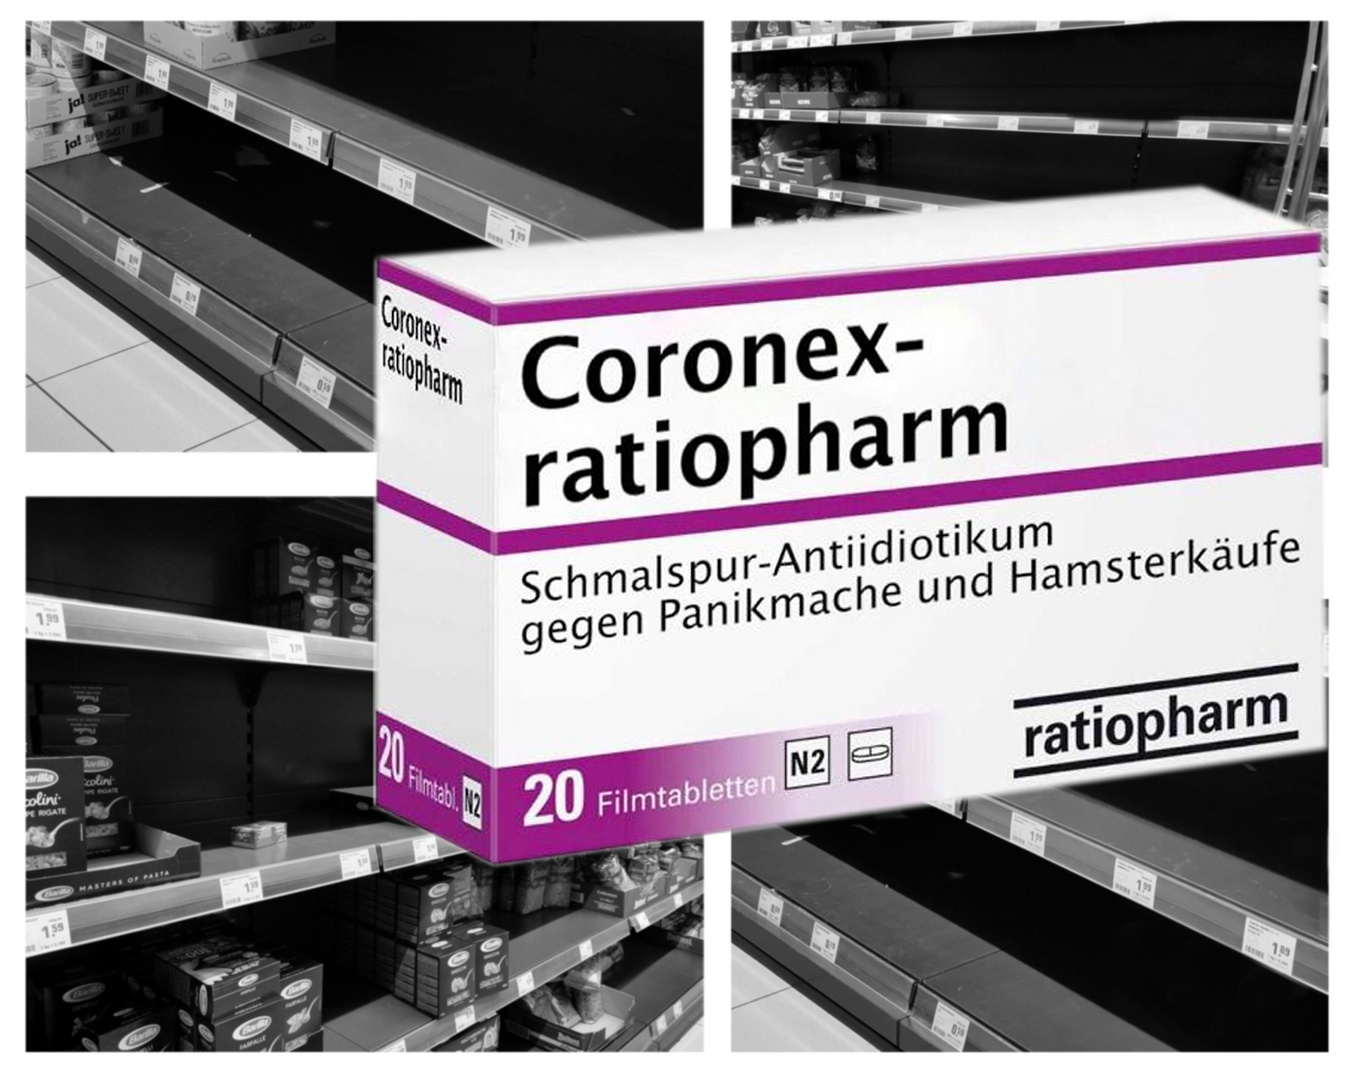 Coronex - ratiopharm